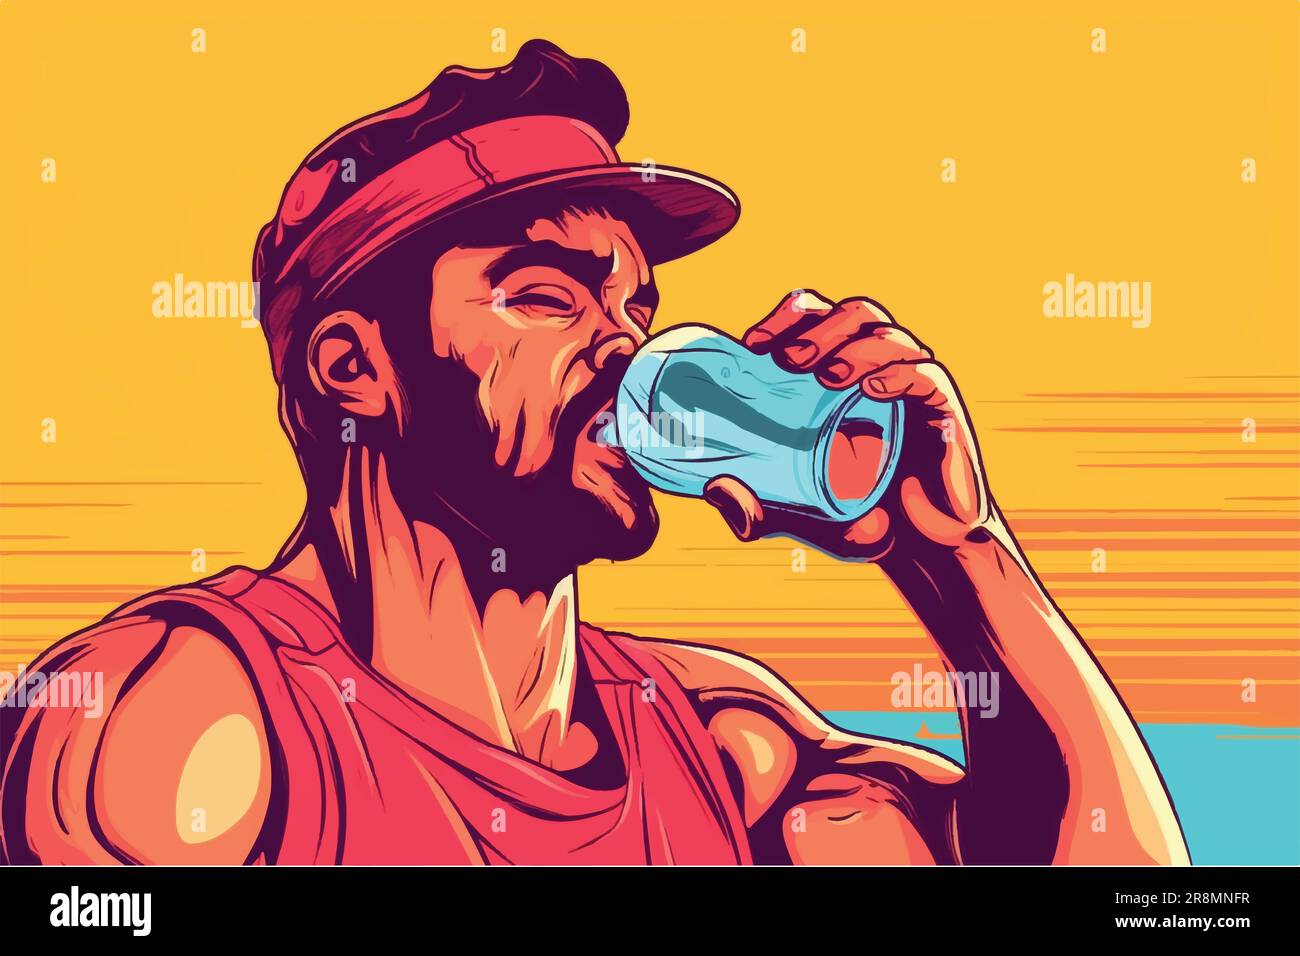 Cartoon-Vektor Illustration der überwältigenden Hitze trinkt man Wasser, um sich von intensivem Training zu erholen Stock Vektor